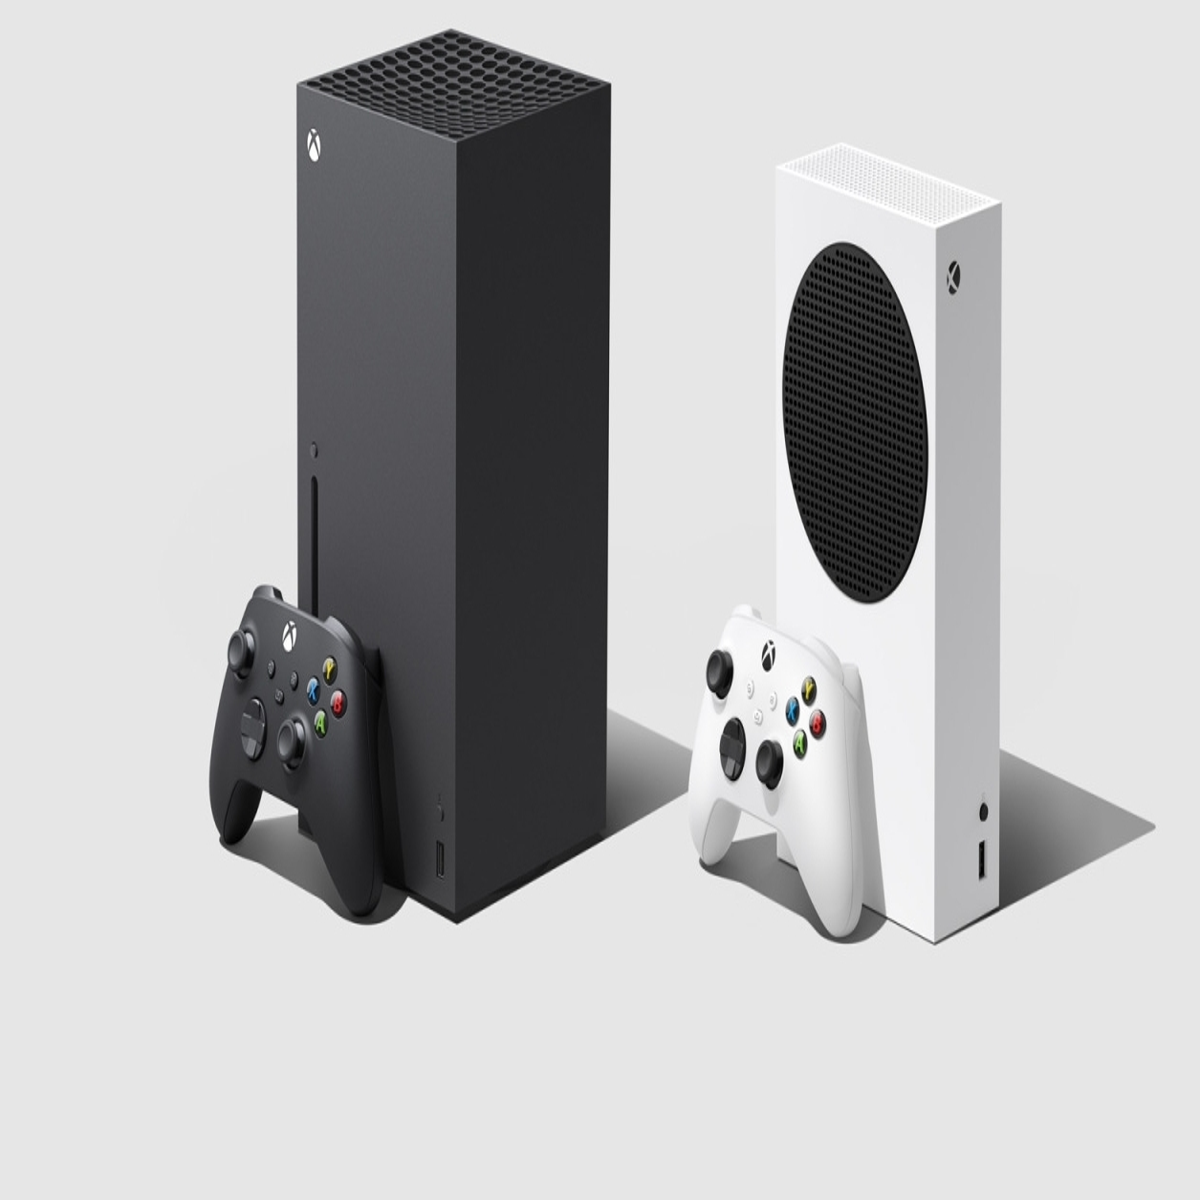 Xbox One S é capaz de rodar jogos nativamente em 4K, informa